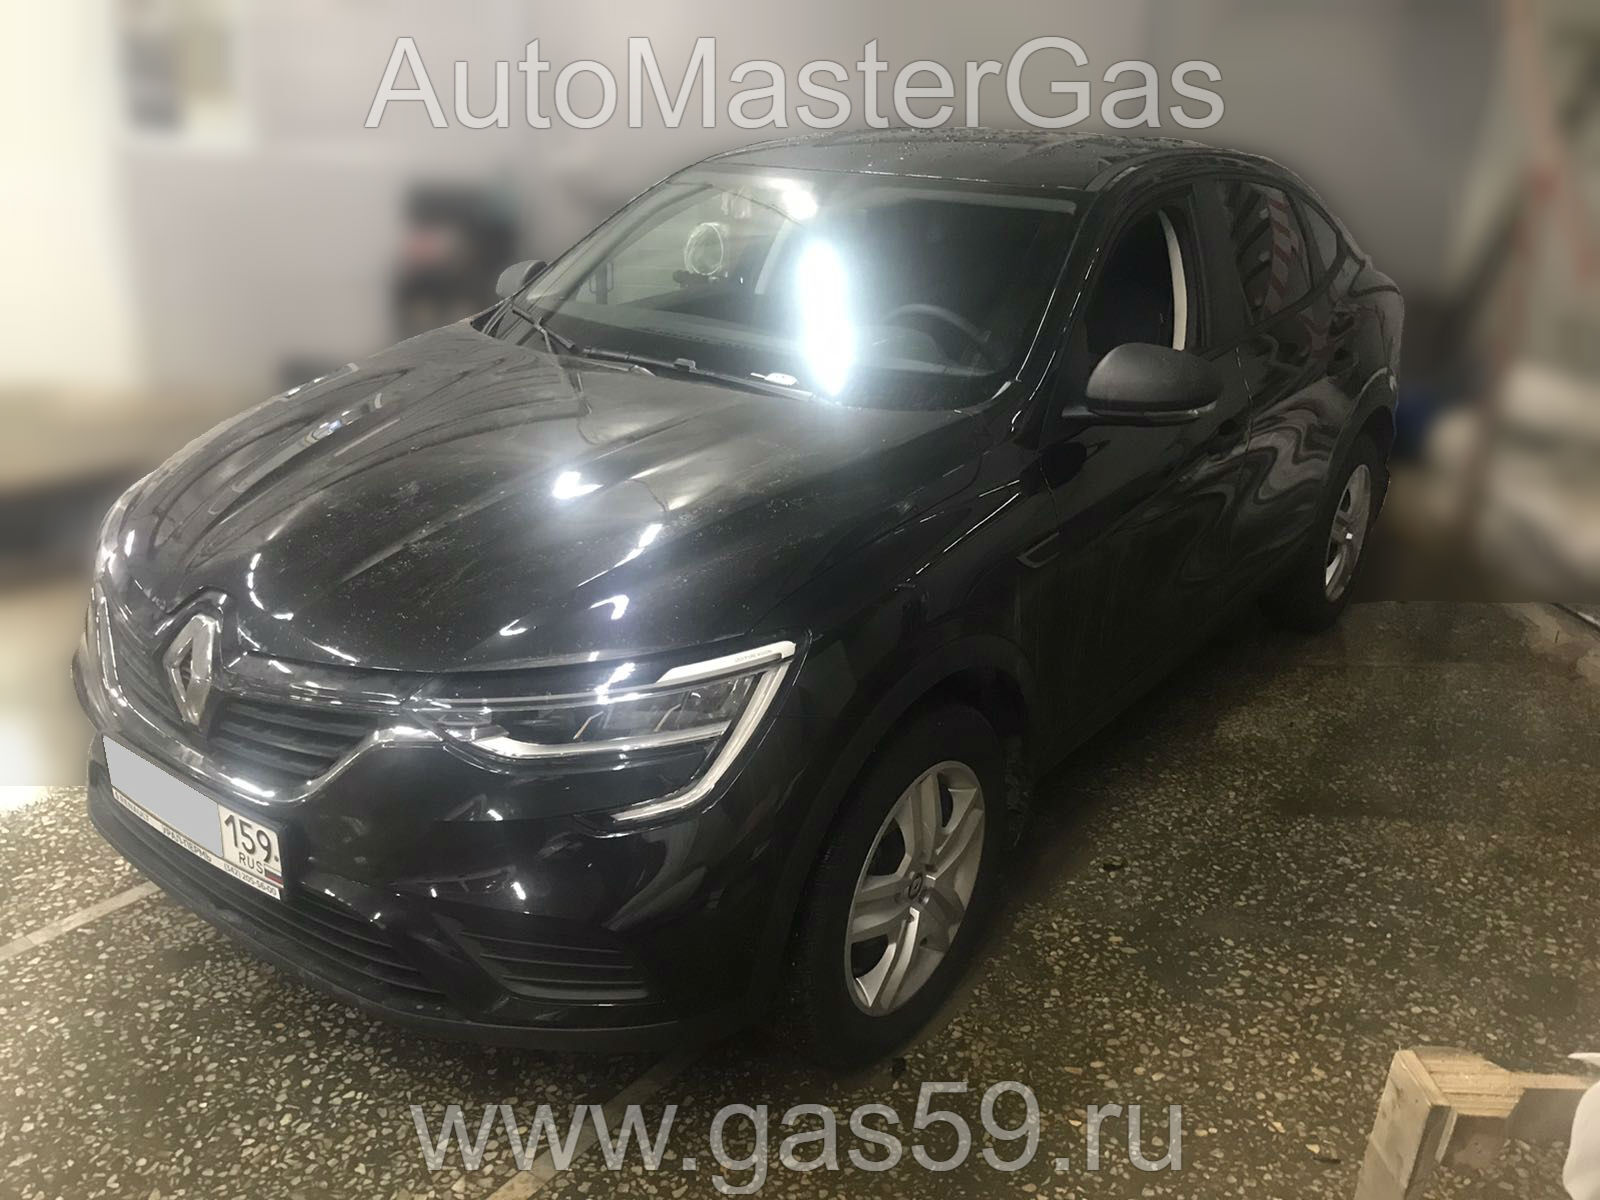 Установка ГБО на Renault Arkana 2019г., ГБО 4 поколения, пропан 4SAVE (Польша), двигатель 1.6л. 4 цилиндра